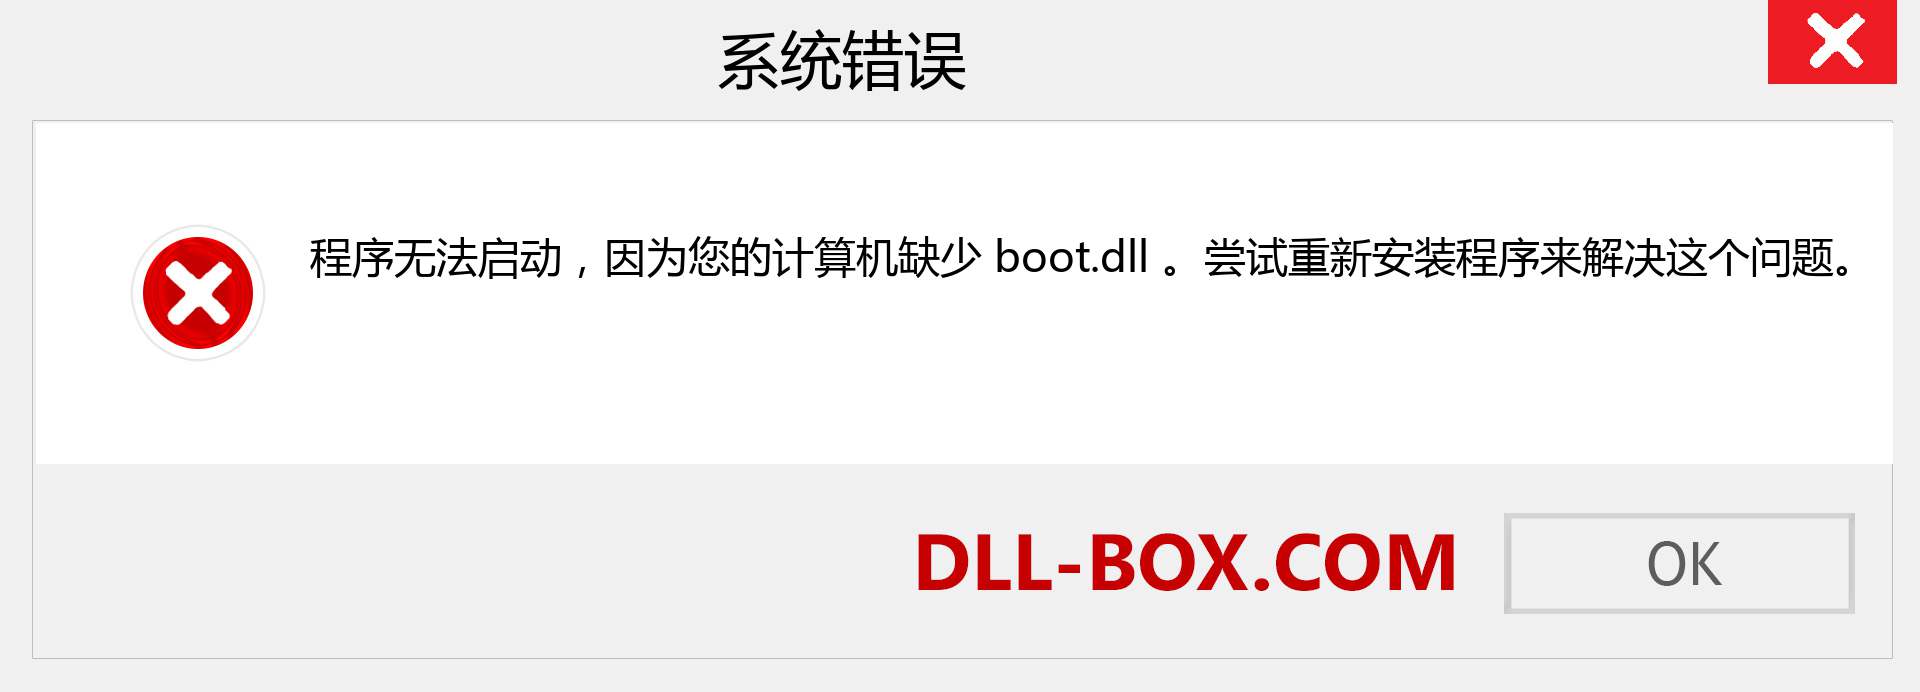 boot.dll 文件丢失？。 适用于 Windows 7、8、10 的下载 - 修复 Windows、照片、图像上的 boot dll 丢失错误